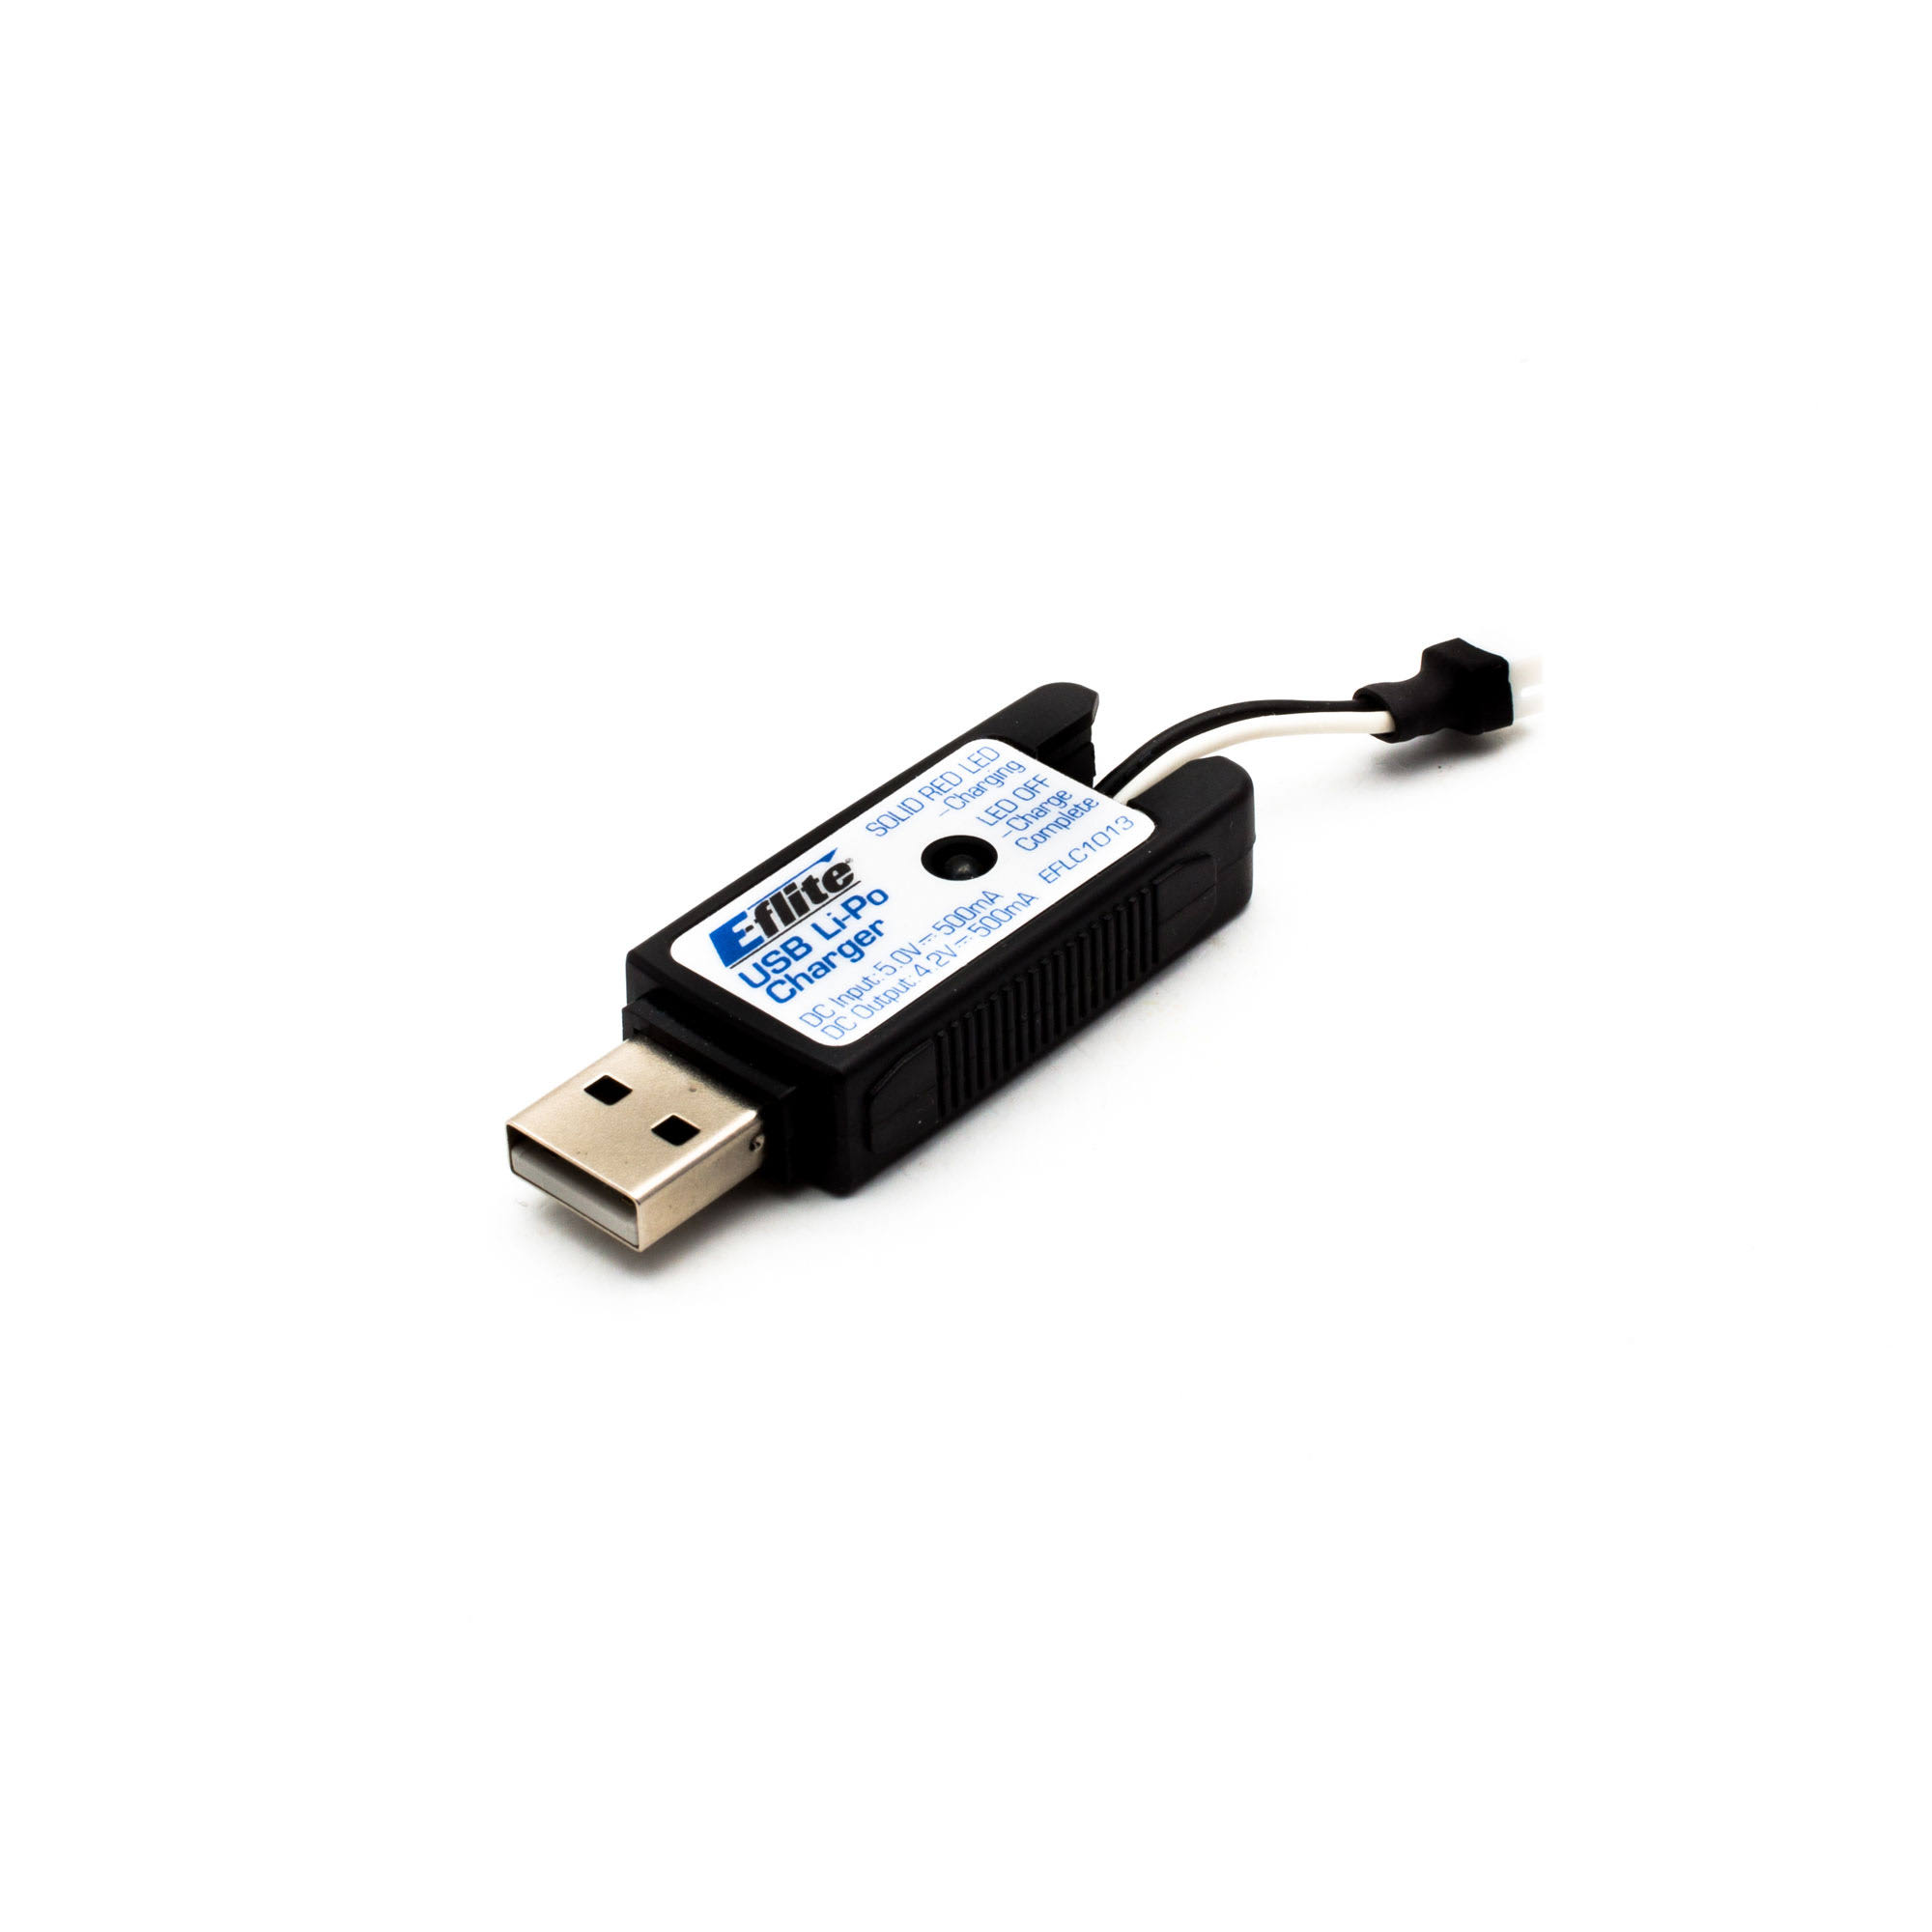 E-flite 1S USB Li-po Charger - 500mah